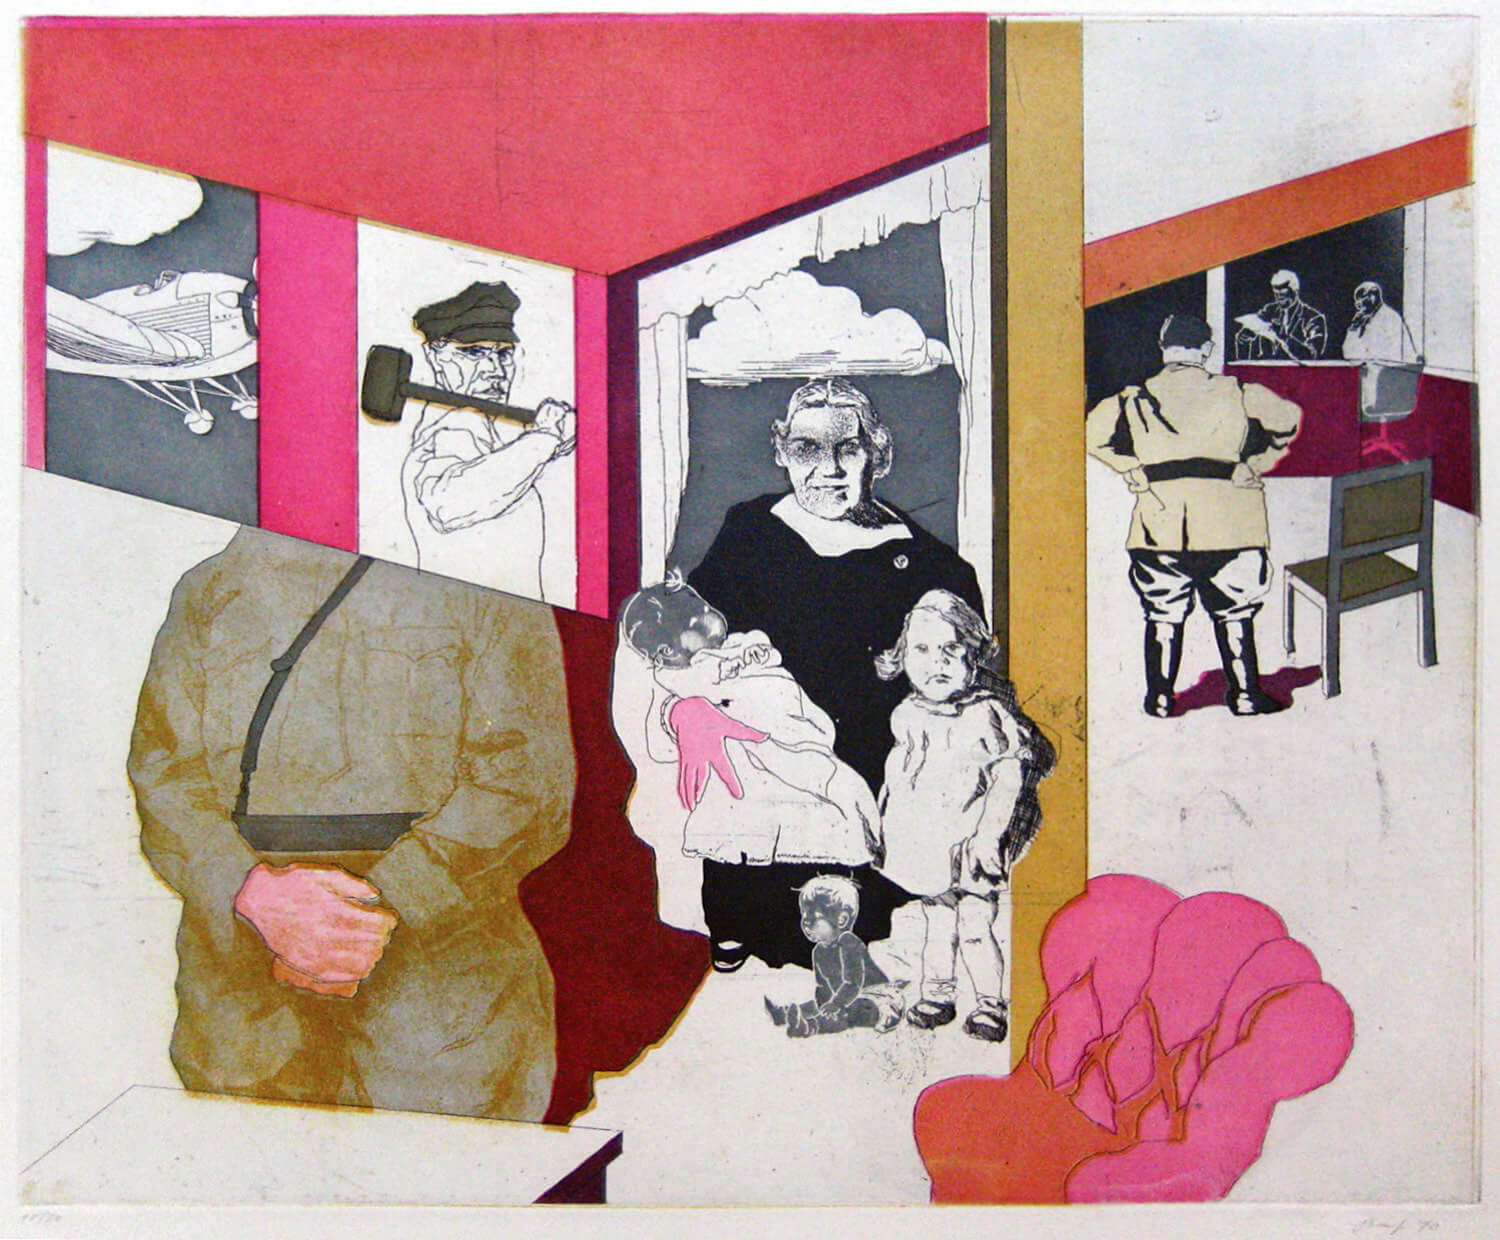 Ulrich Baehr, Sonderbeitrag: Einen Augenblick ruht die Arbeit. Der Führer fährt vorbei, 1970, Farbradierung, Auflage: 20, 54 x 76 cm, Mappe mit 5 Motiven